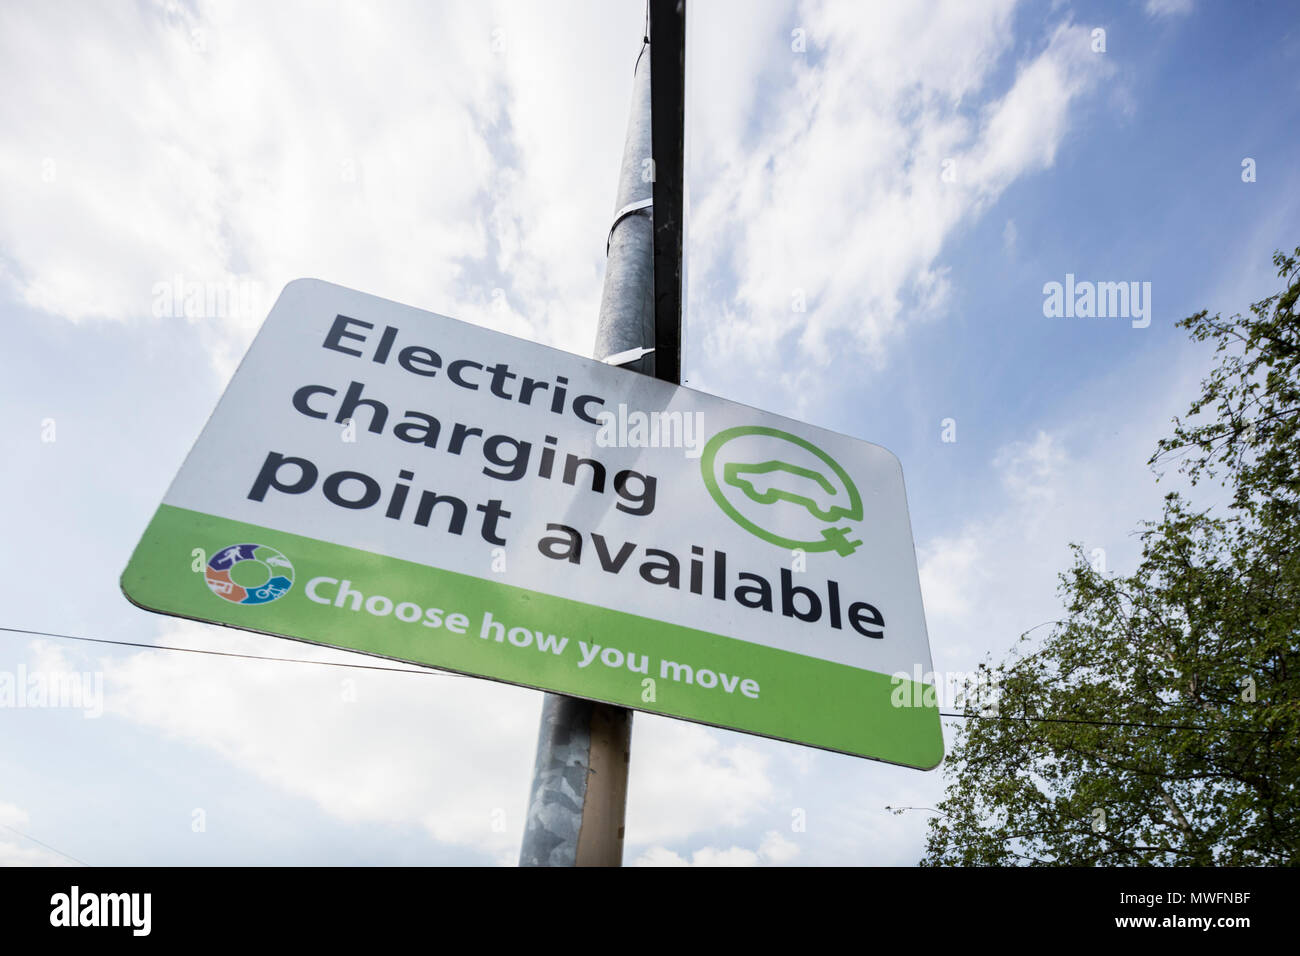 Zeichen für eine elektrische Ladung in einem Parkhaus, England, Großbritannien Stockfoto